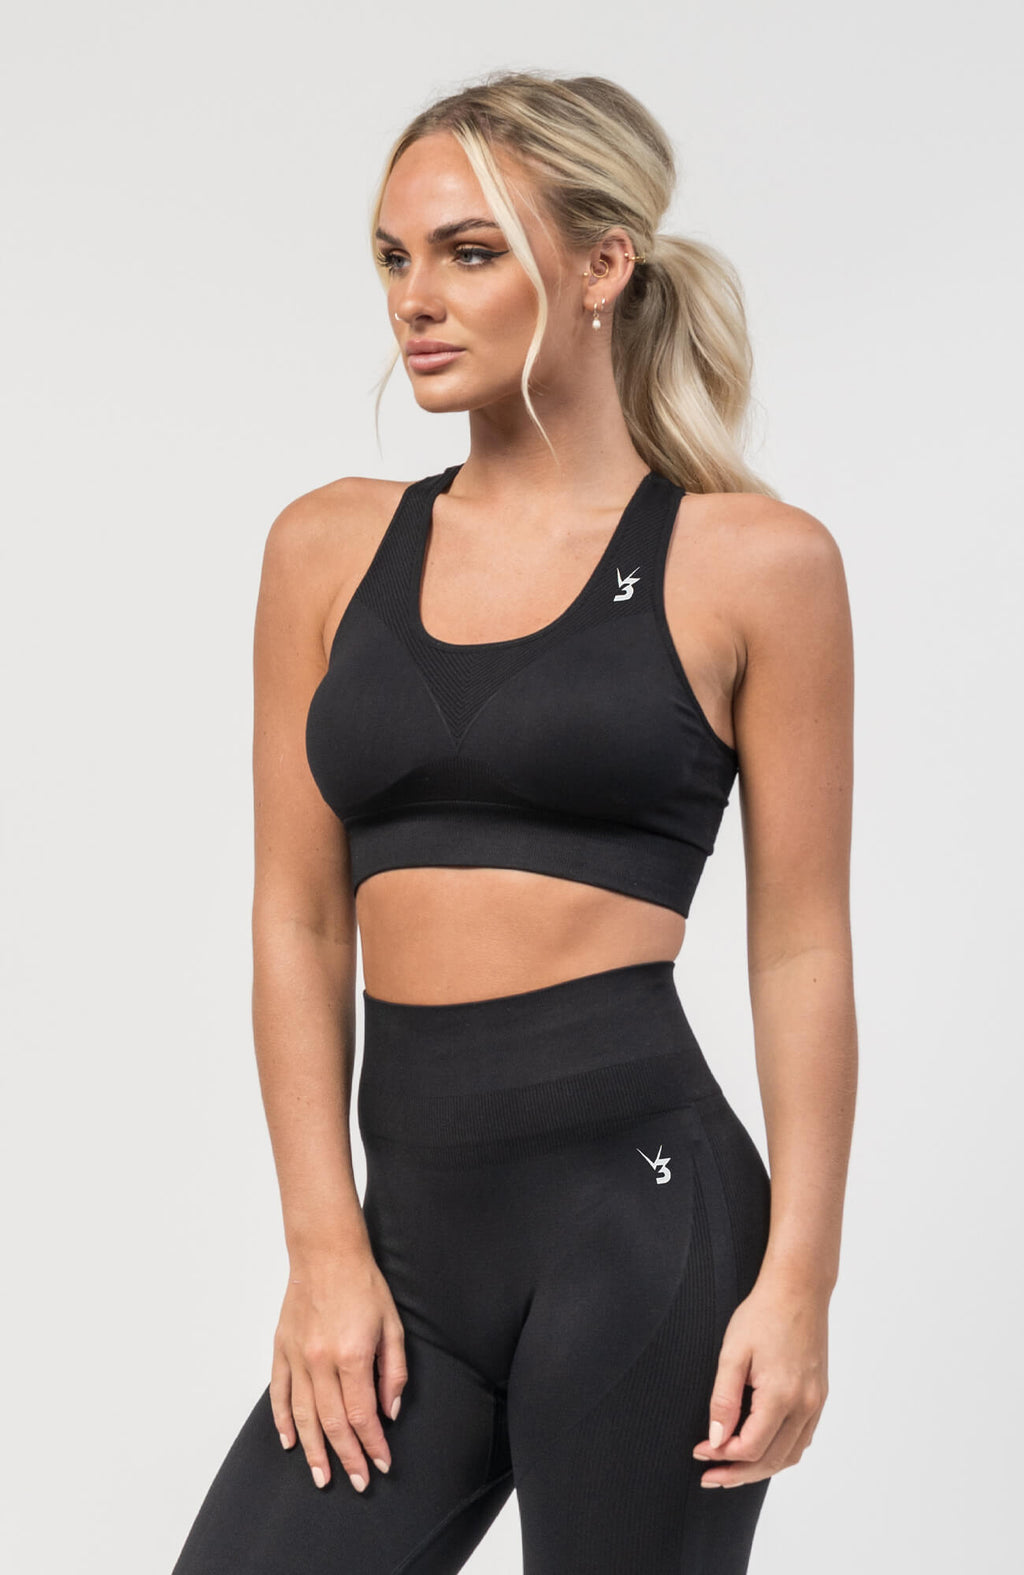 Adjustable Back Sports Bras for Women Yoga Shirts Running Vest